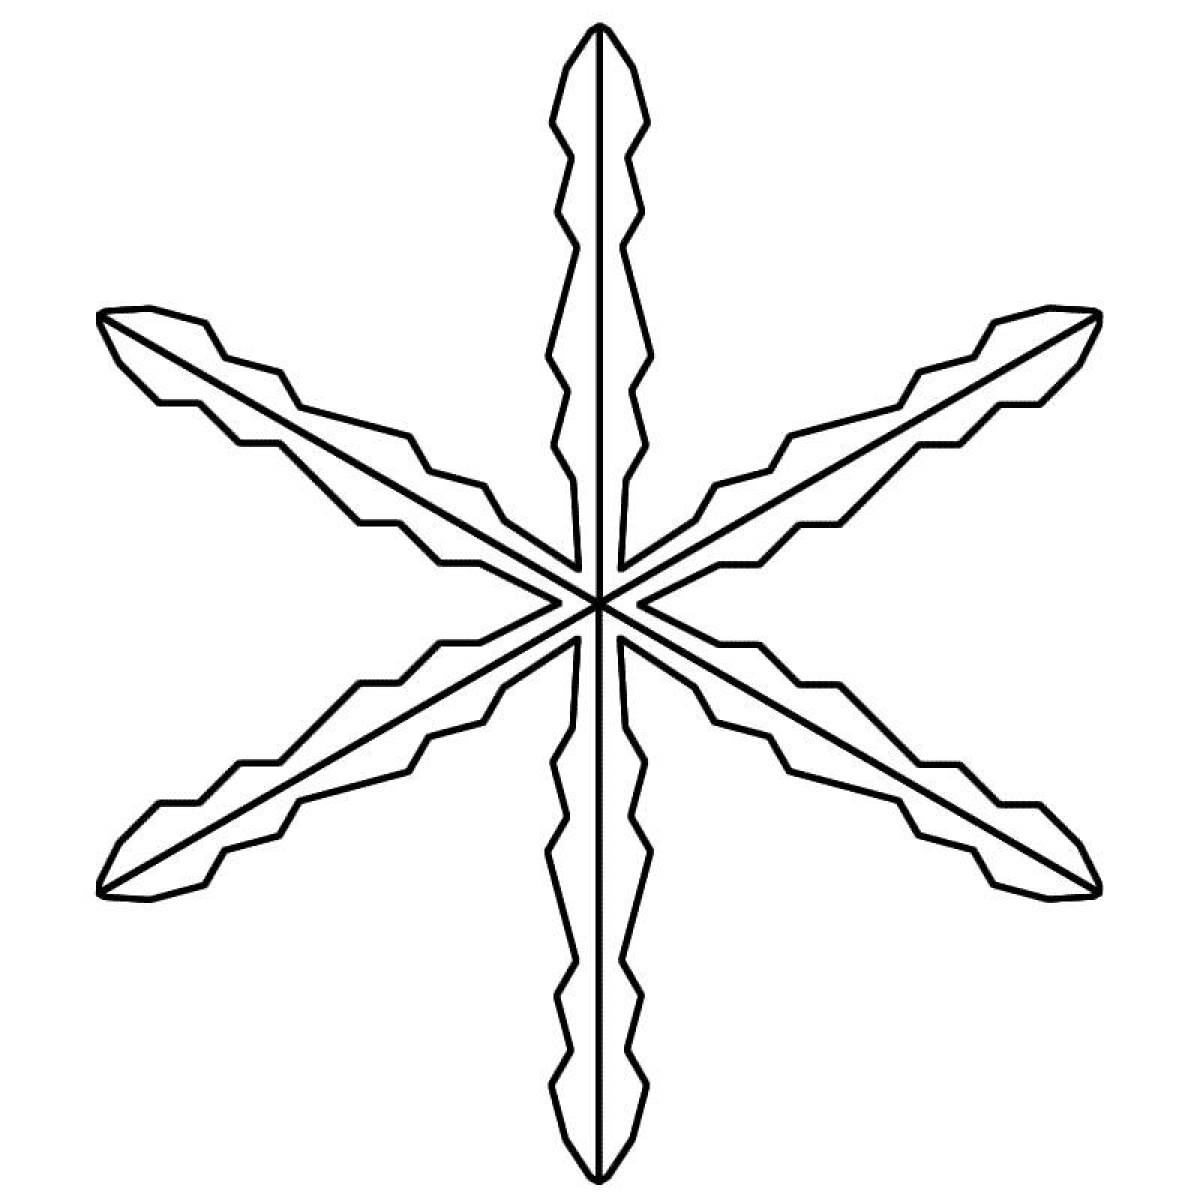 Hexagon snowflake